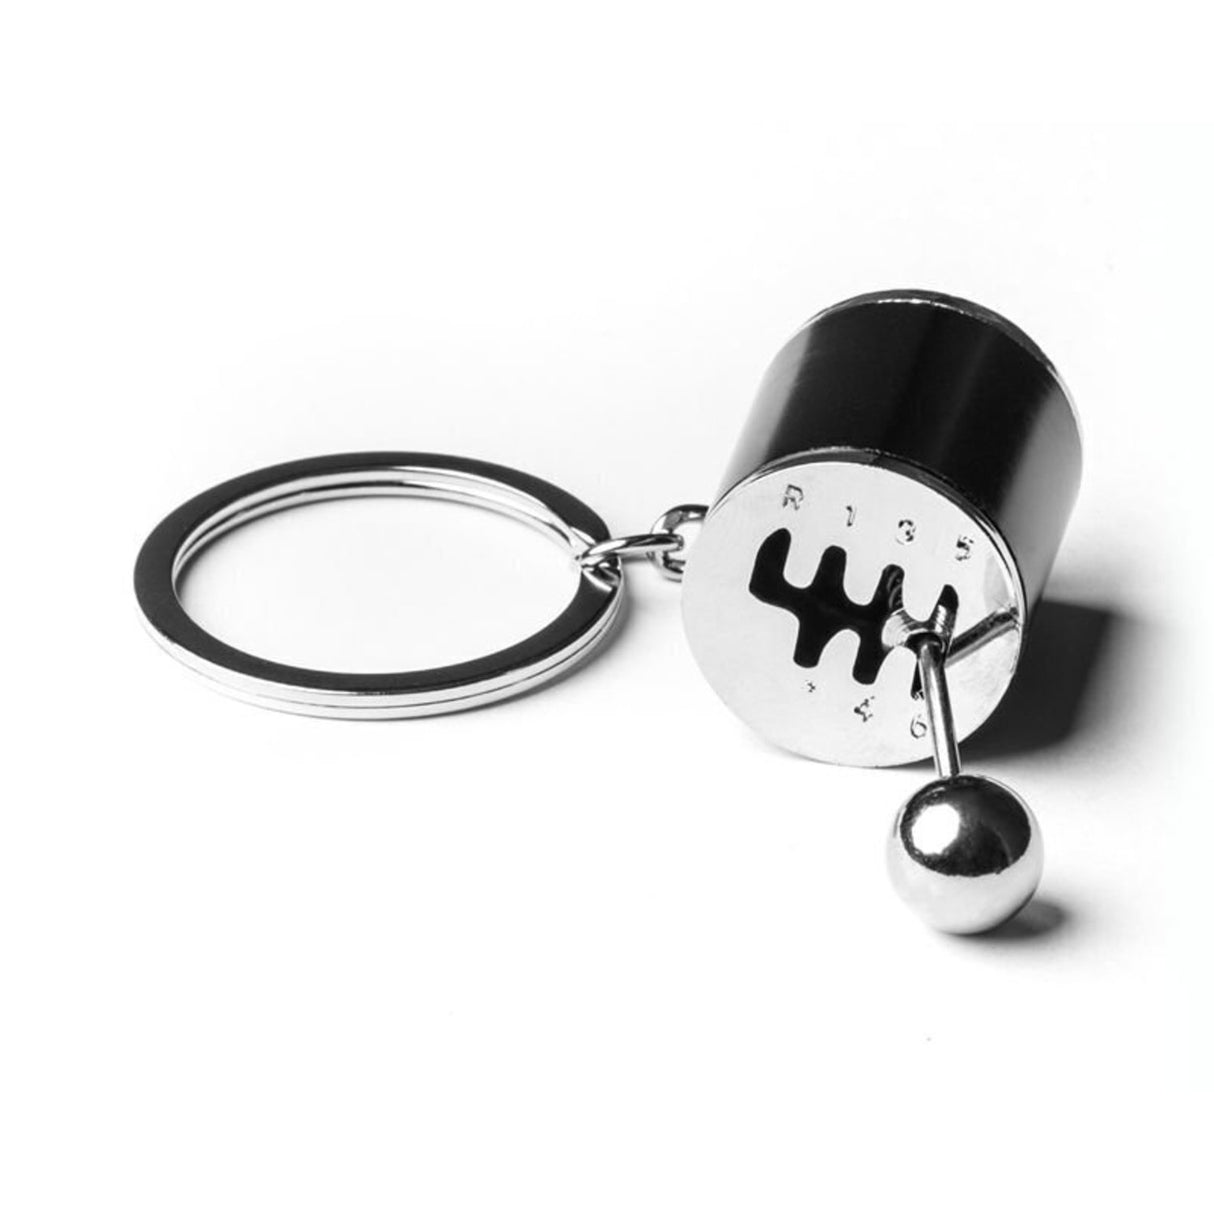 Gangschaltung Schlüsselanhänger: Jetzt kaufen und schalten! –